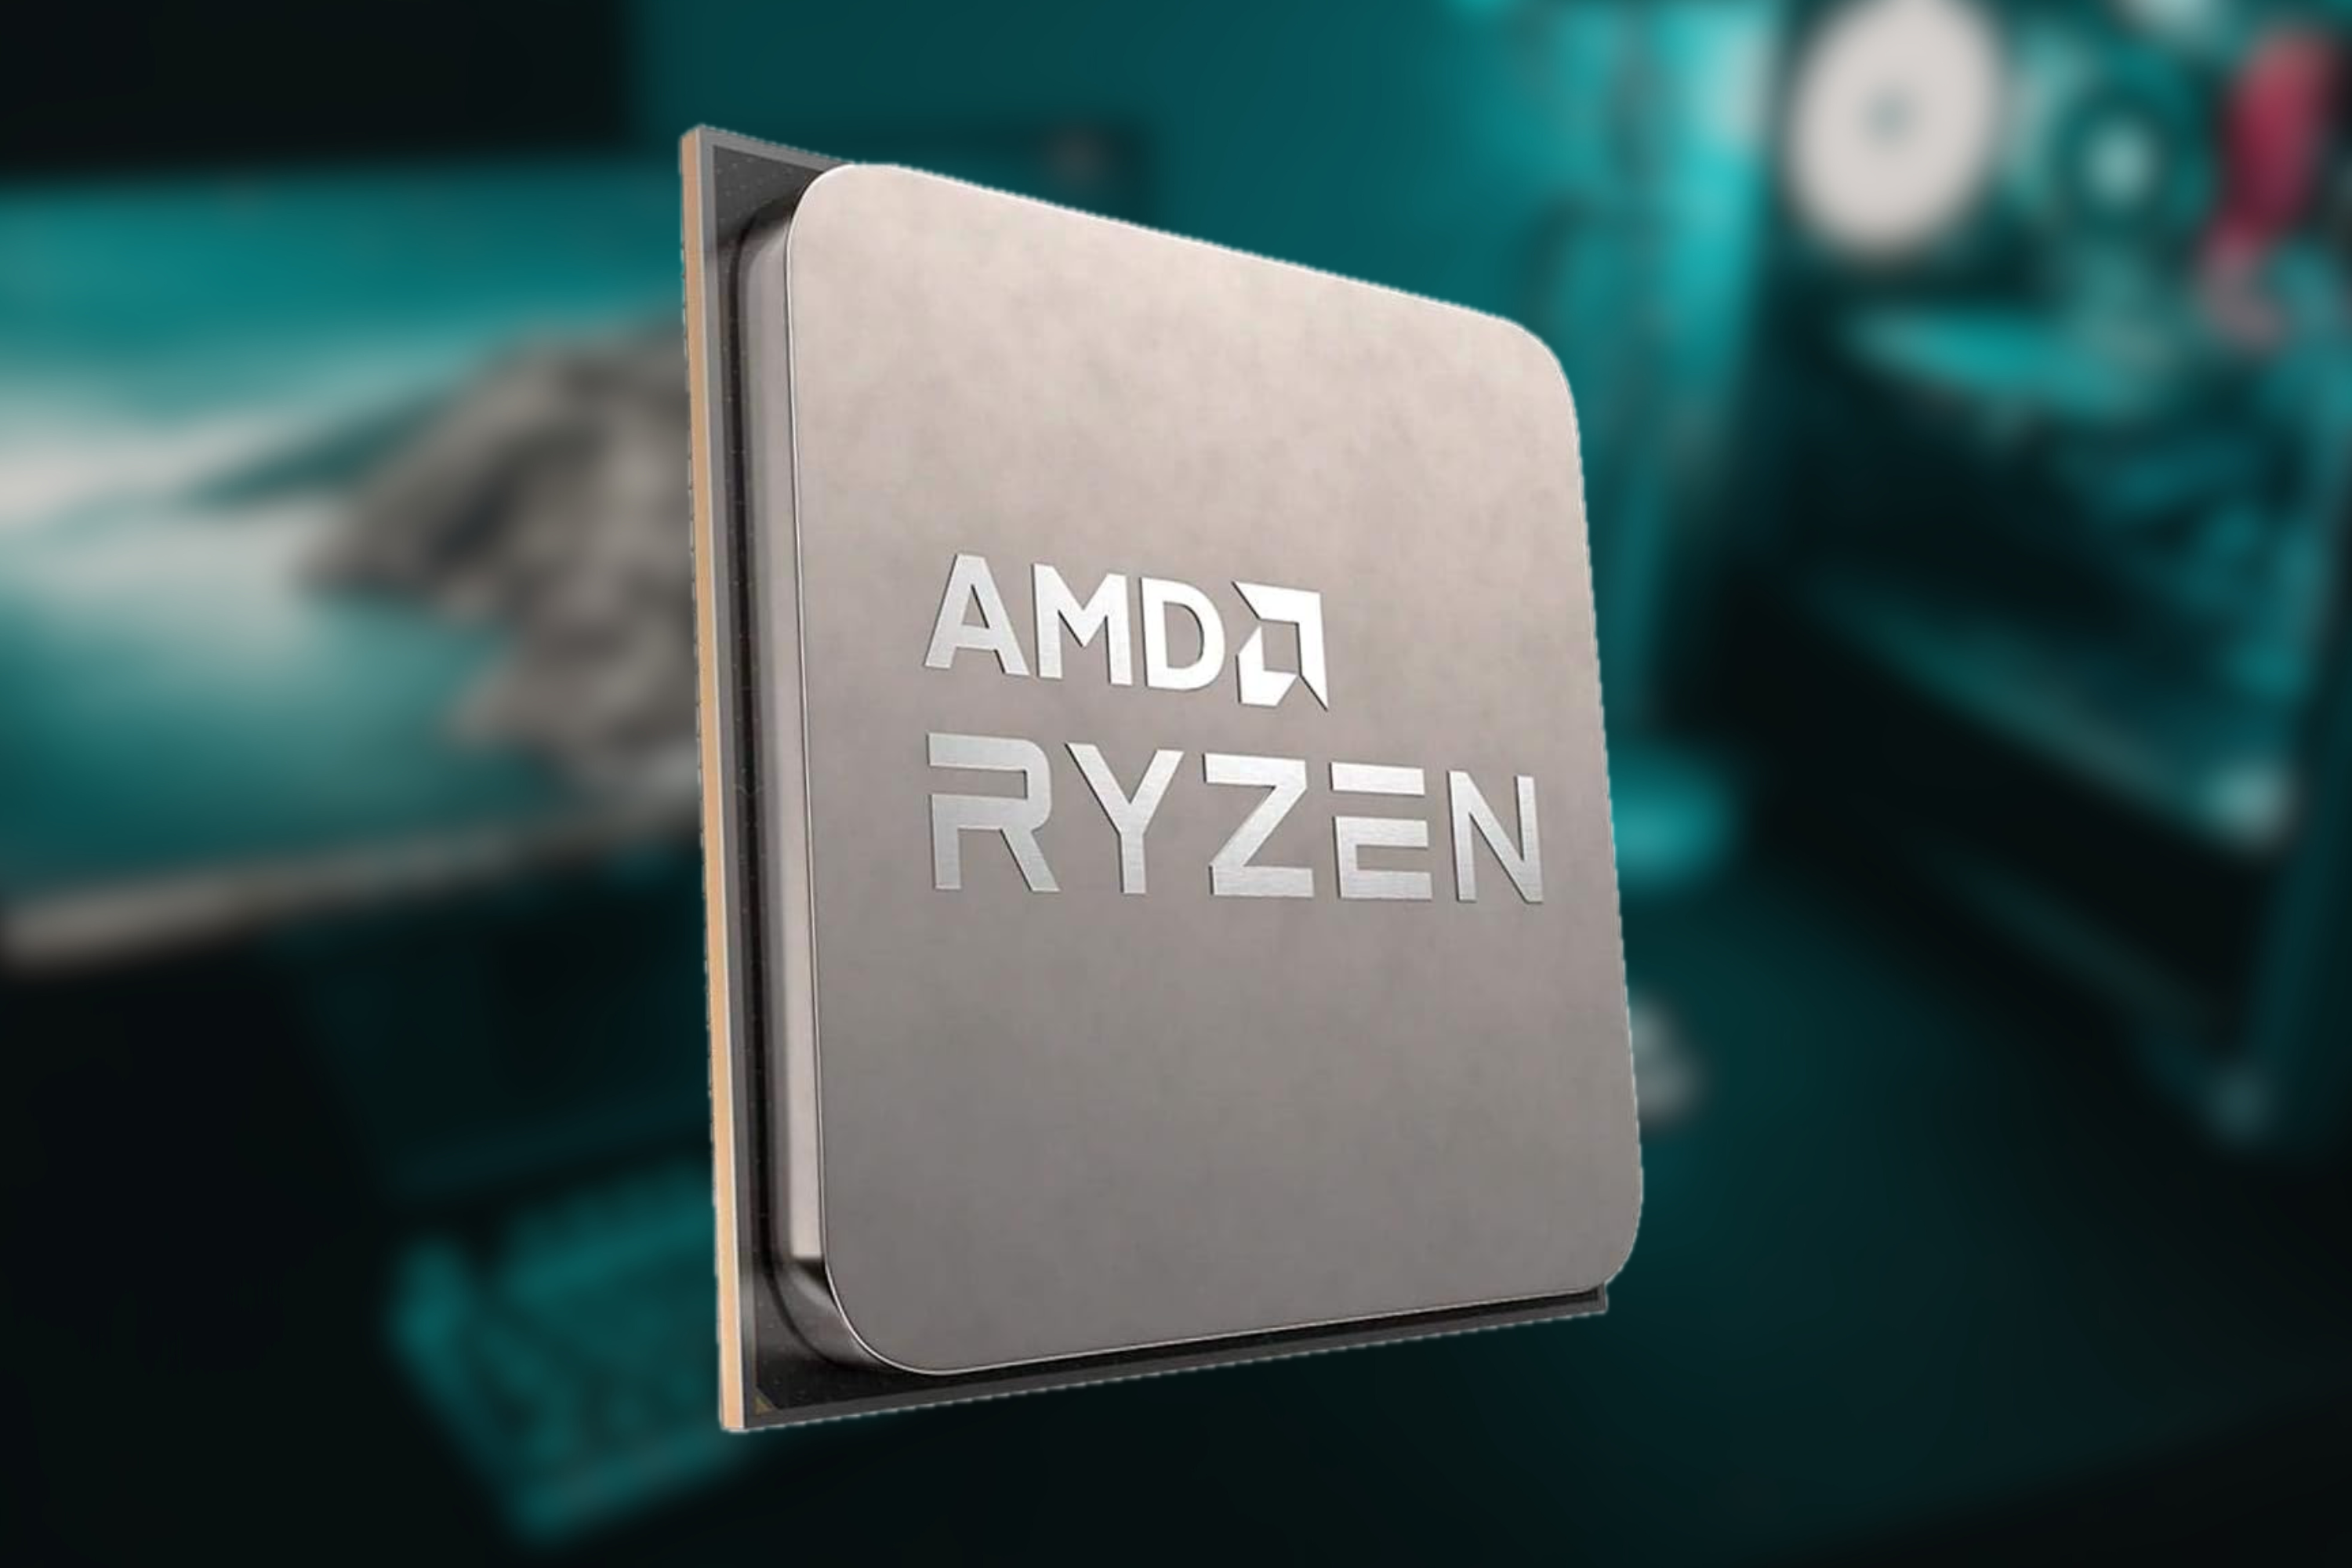 Ryzen CPU on blurred background